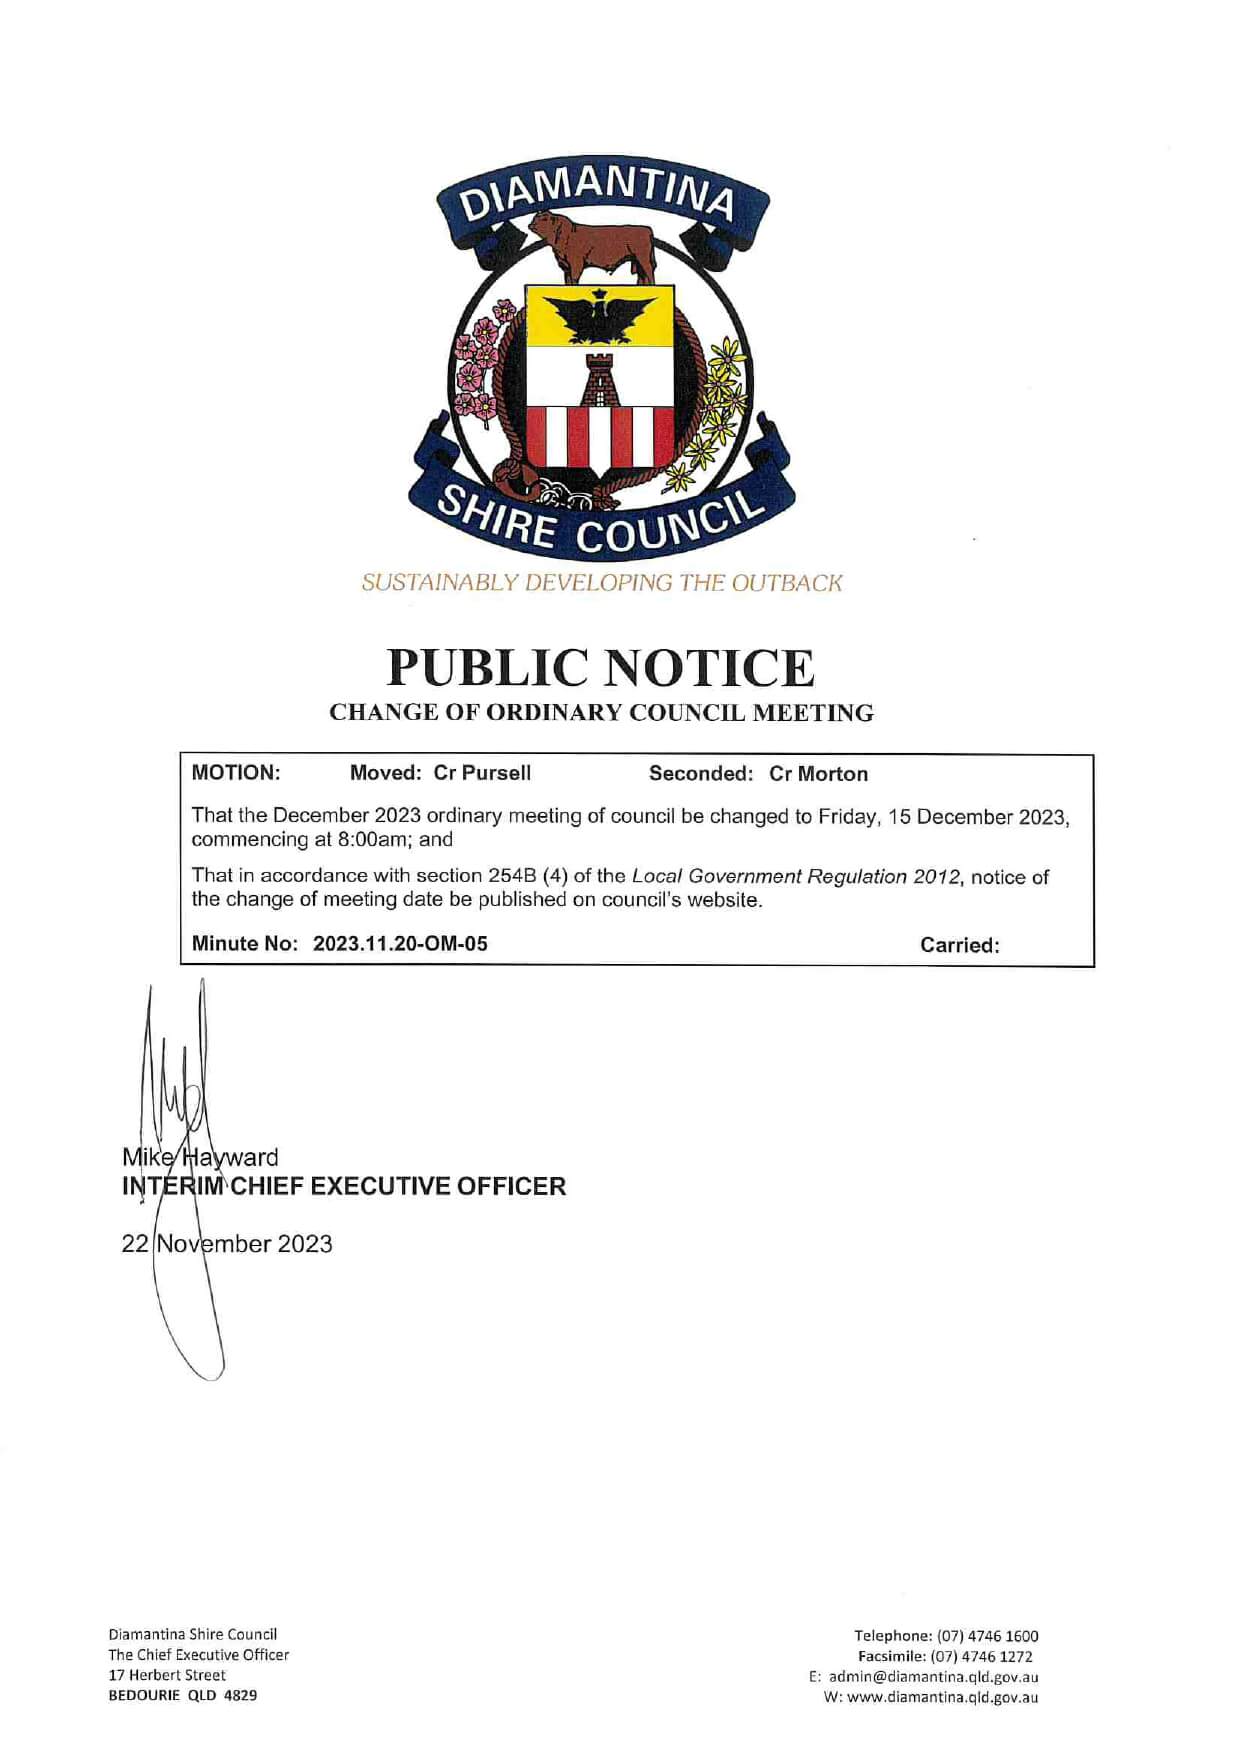 Public Notice 